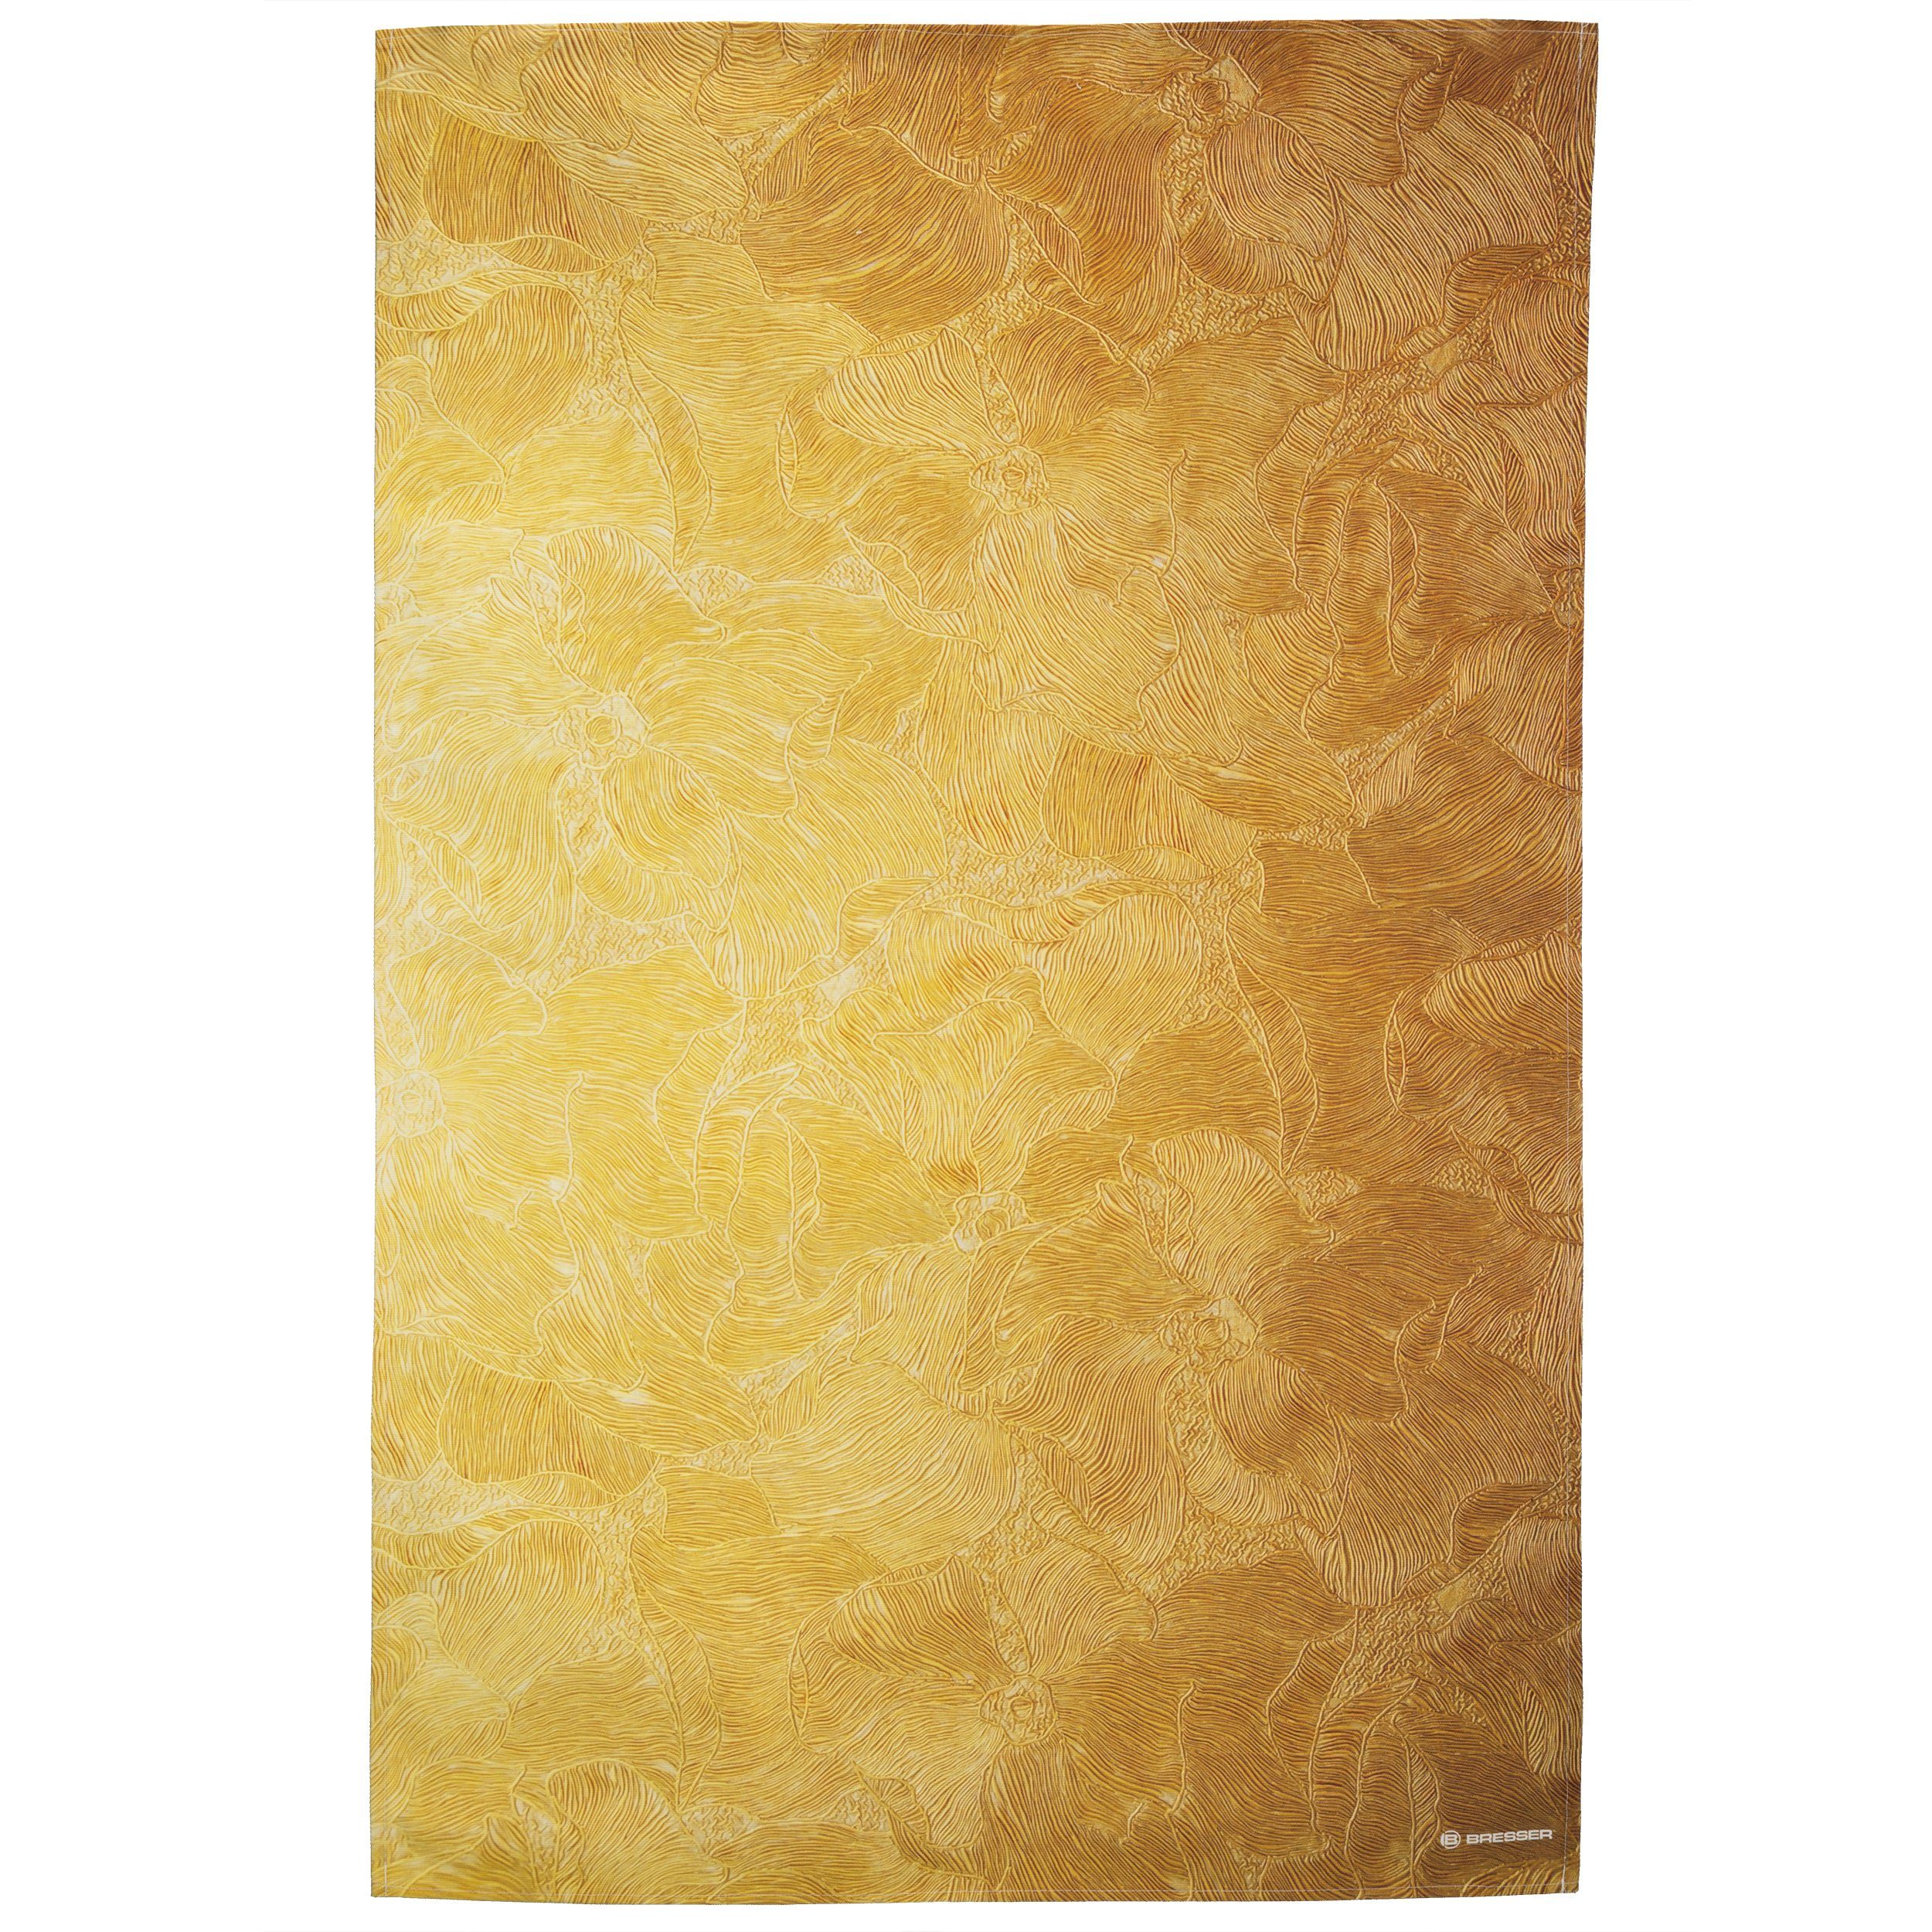 Hintergrundtuch Golden 80 cm - Fotomotiv x 120 Hintergrundstoff mit Flower BRESSER